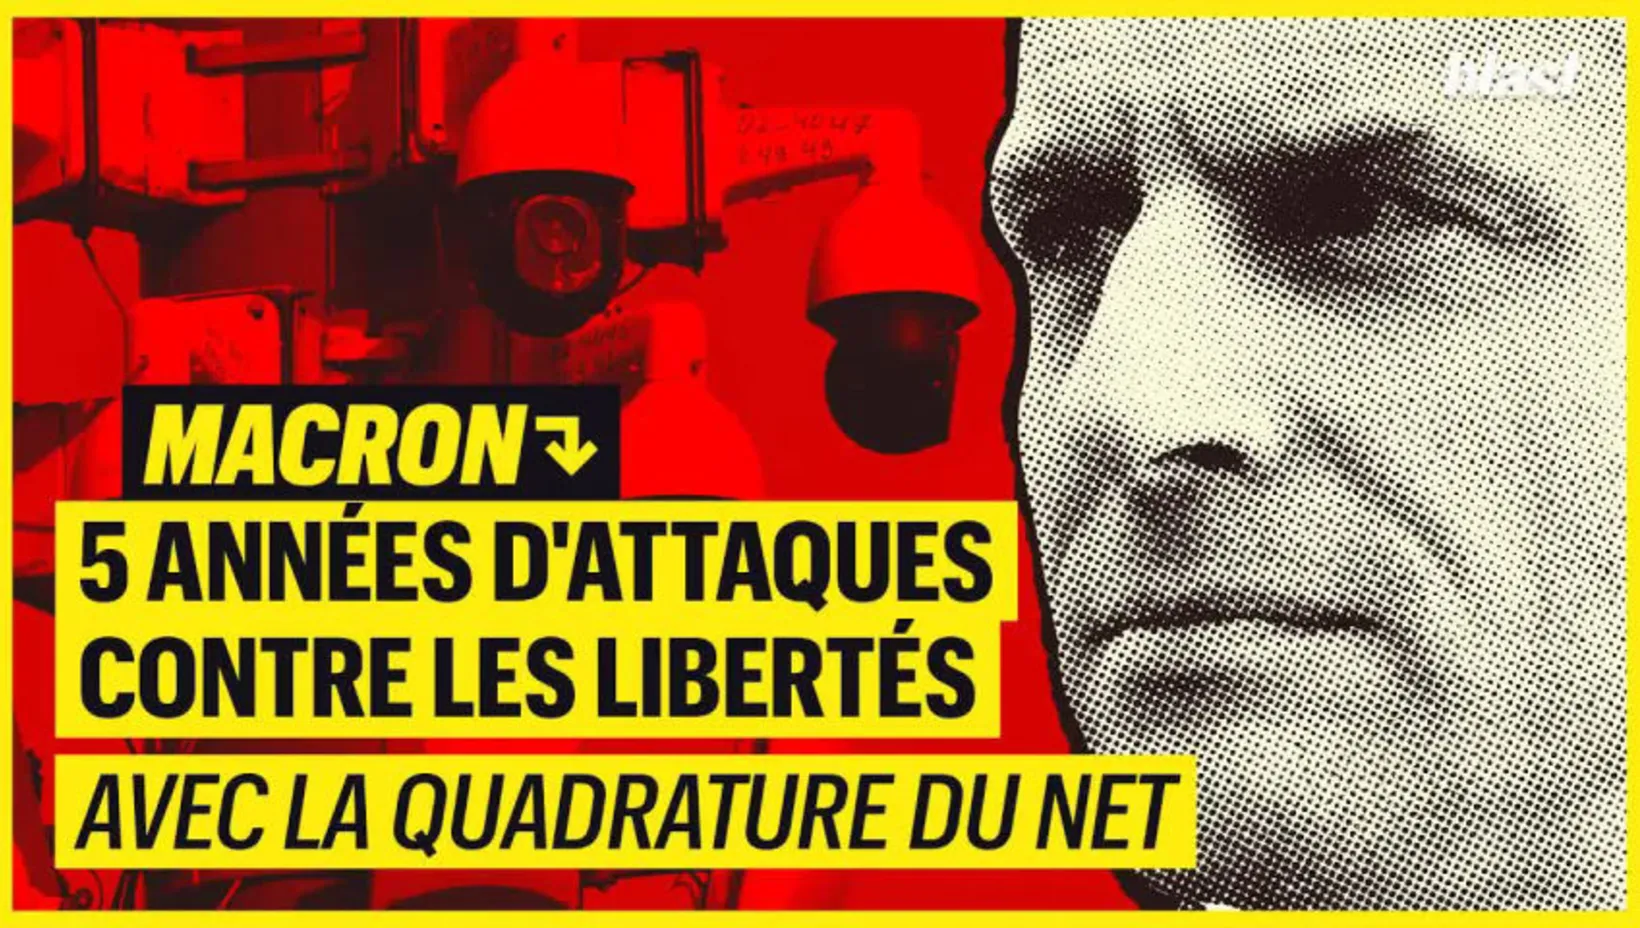 Macron : 5 années d'attaques contre nos libertés